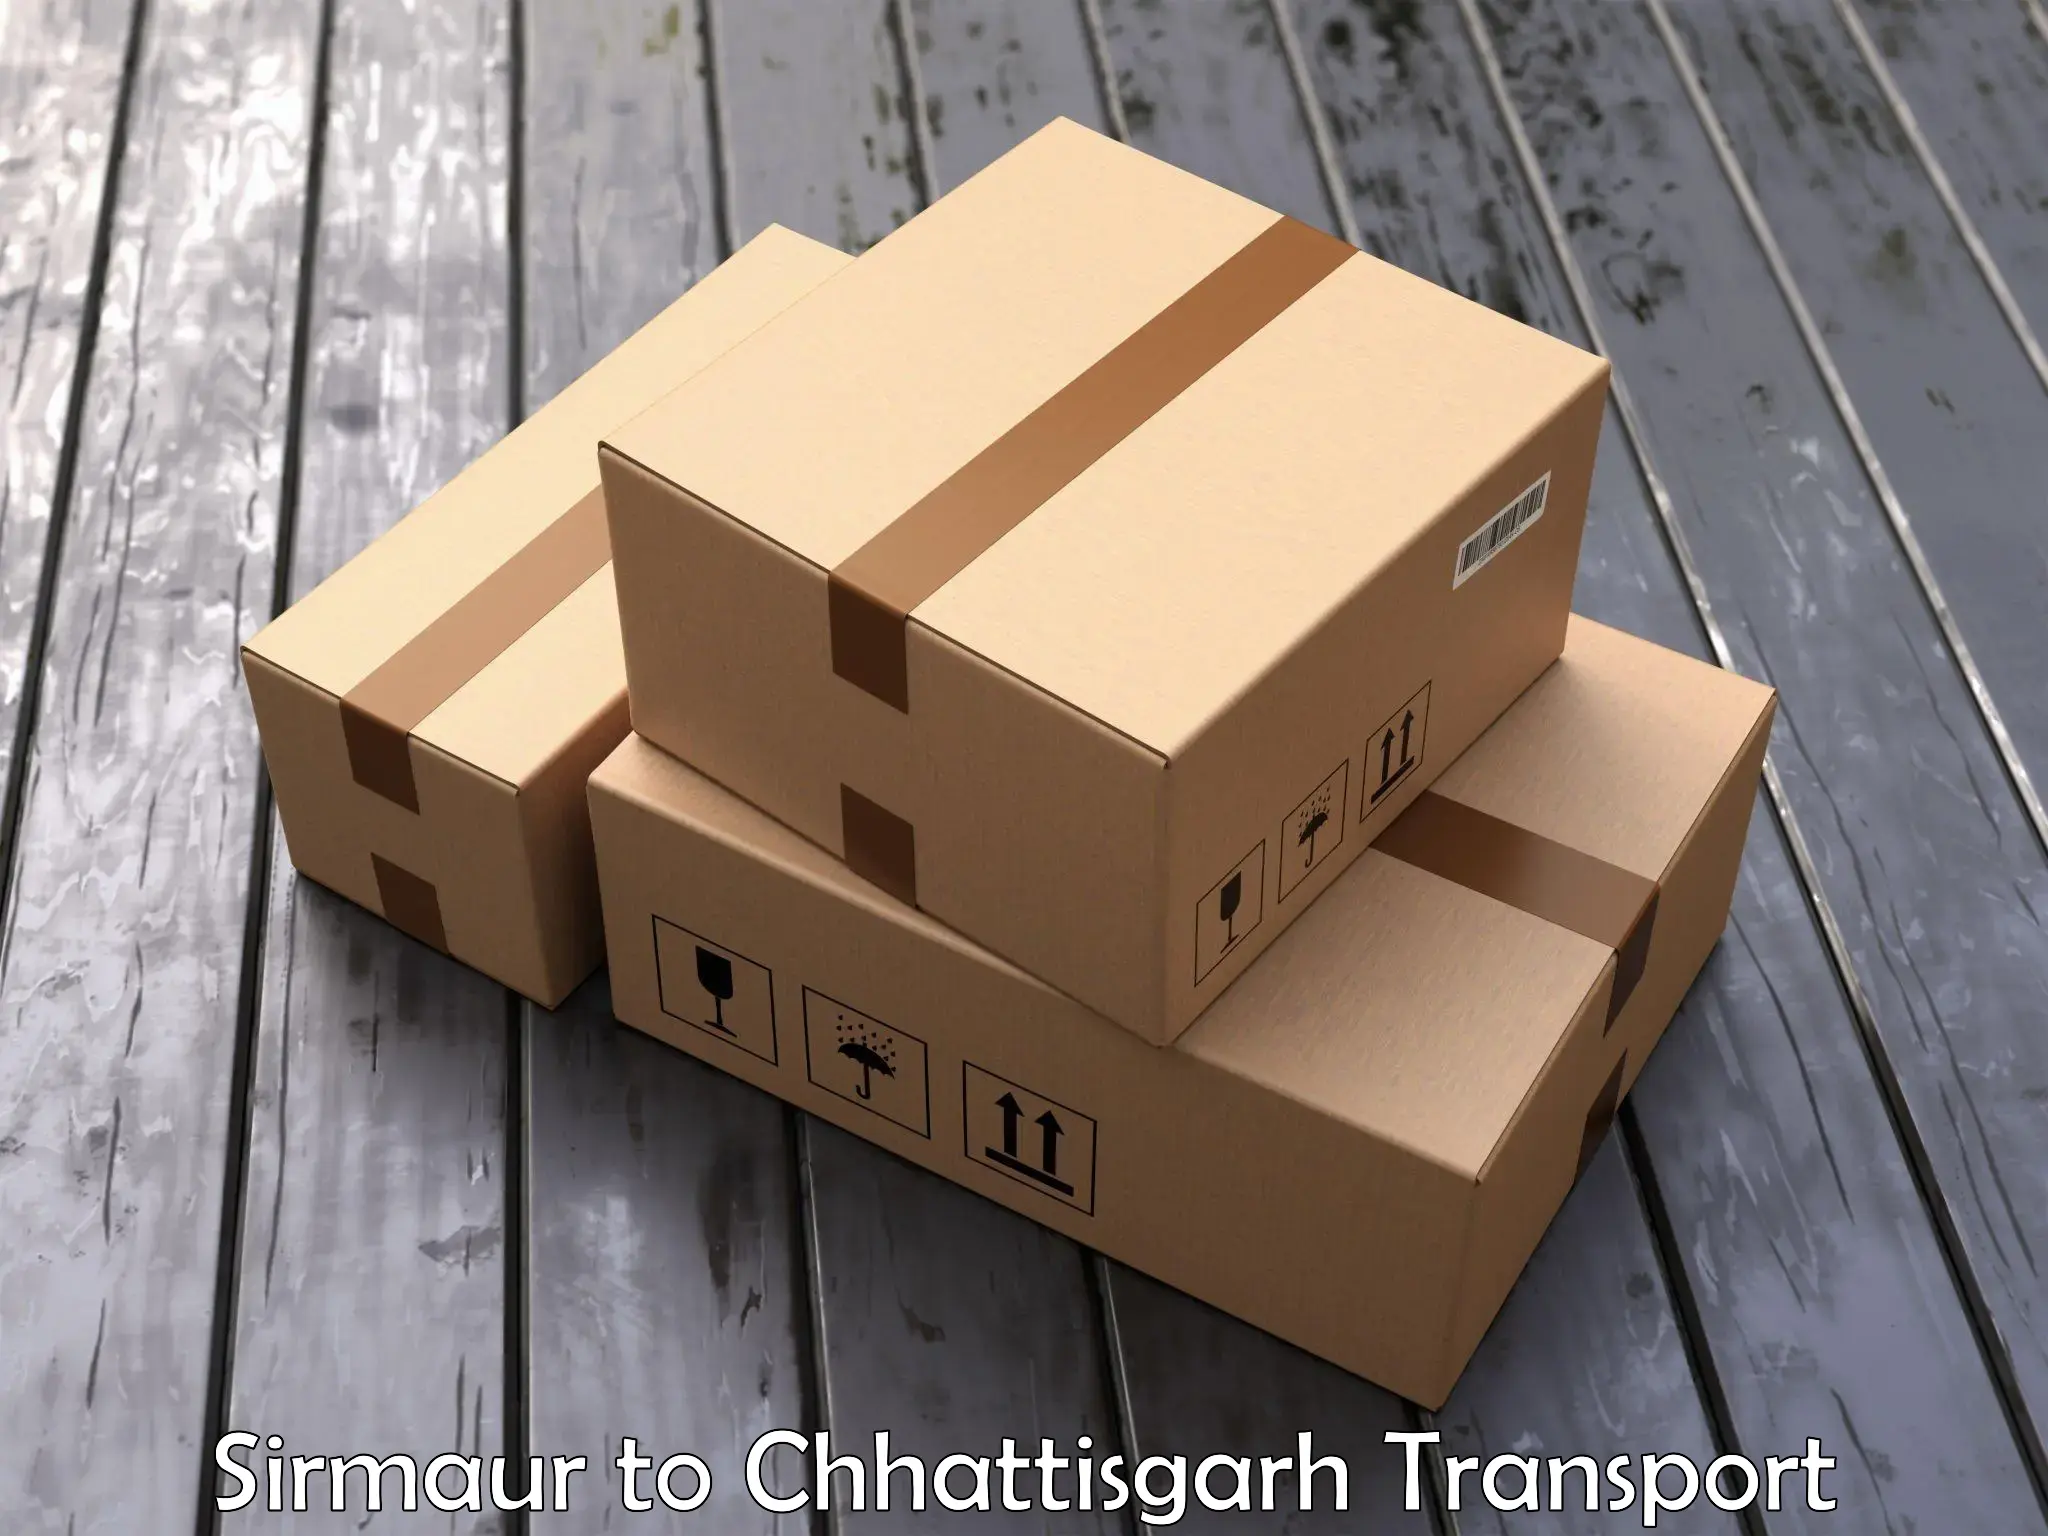 Cargo train transport services Sirmaur to Bijapur Chhattisgarh